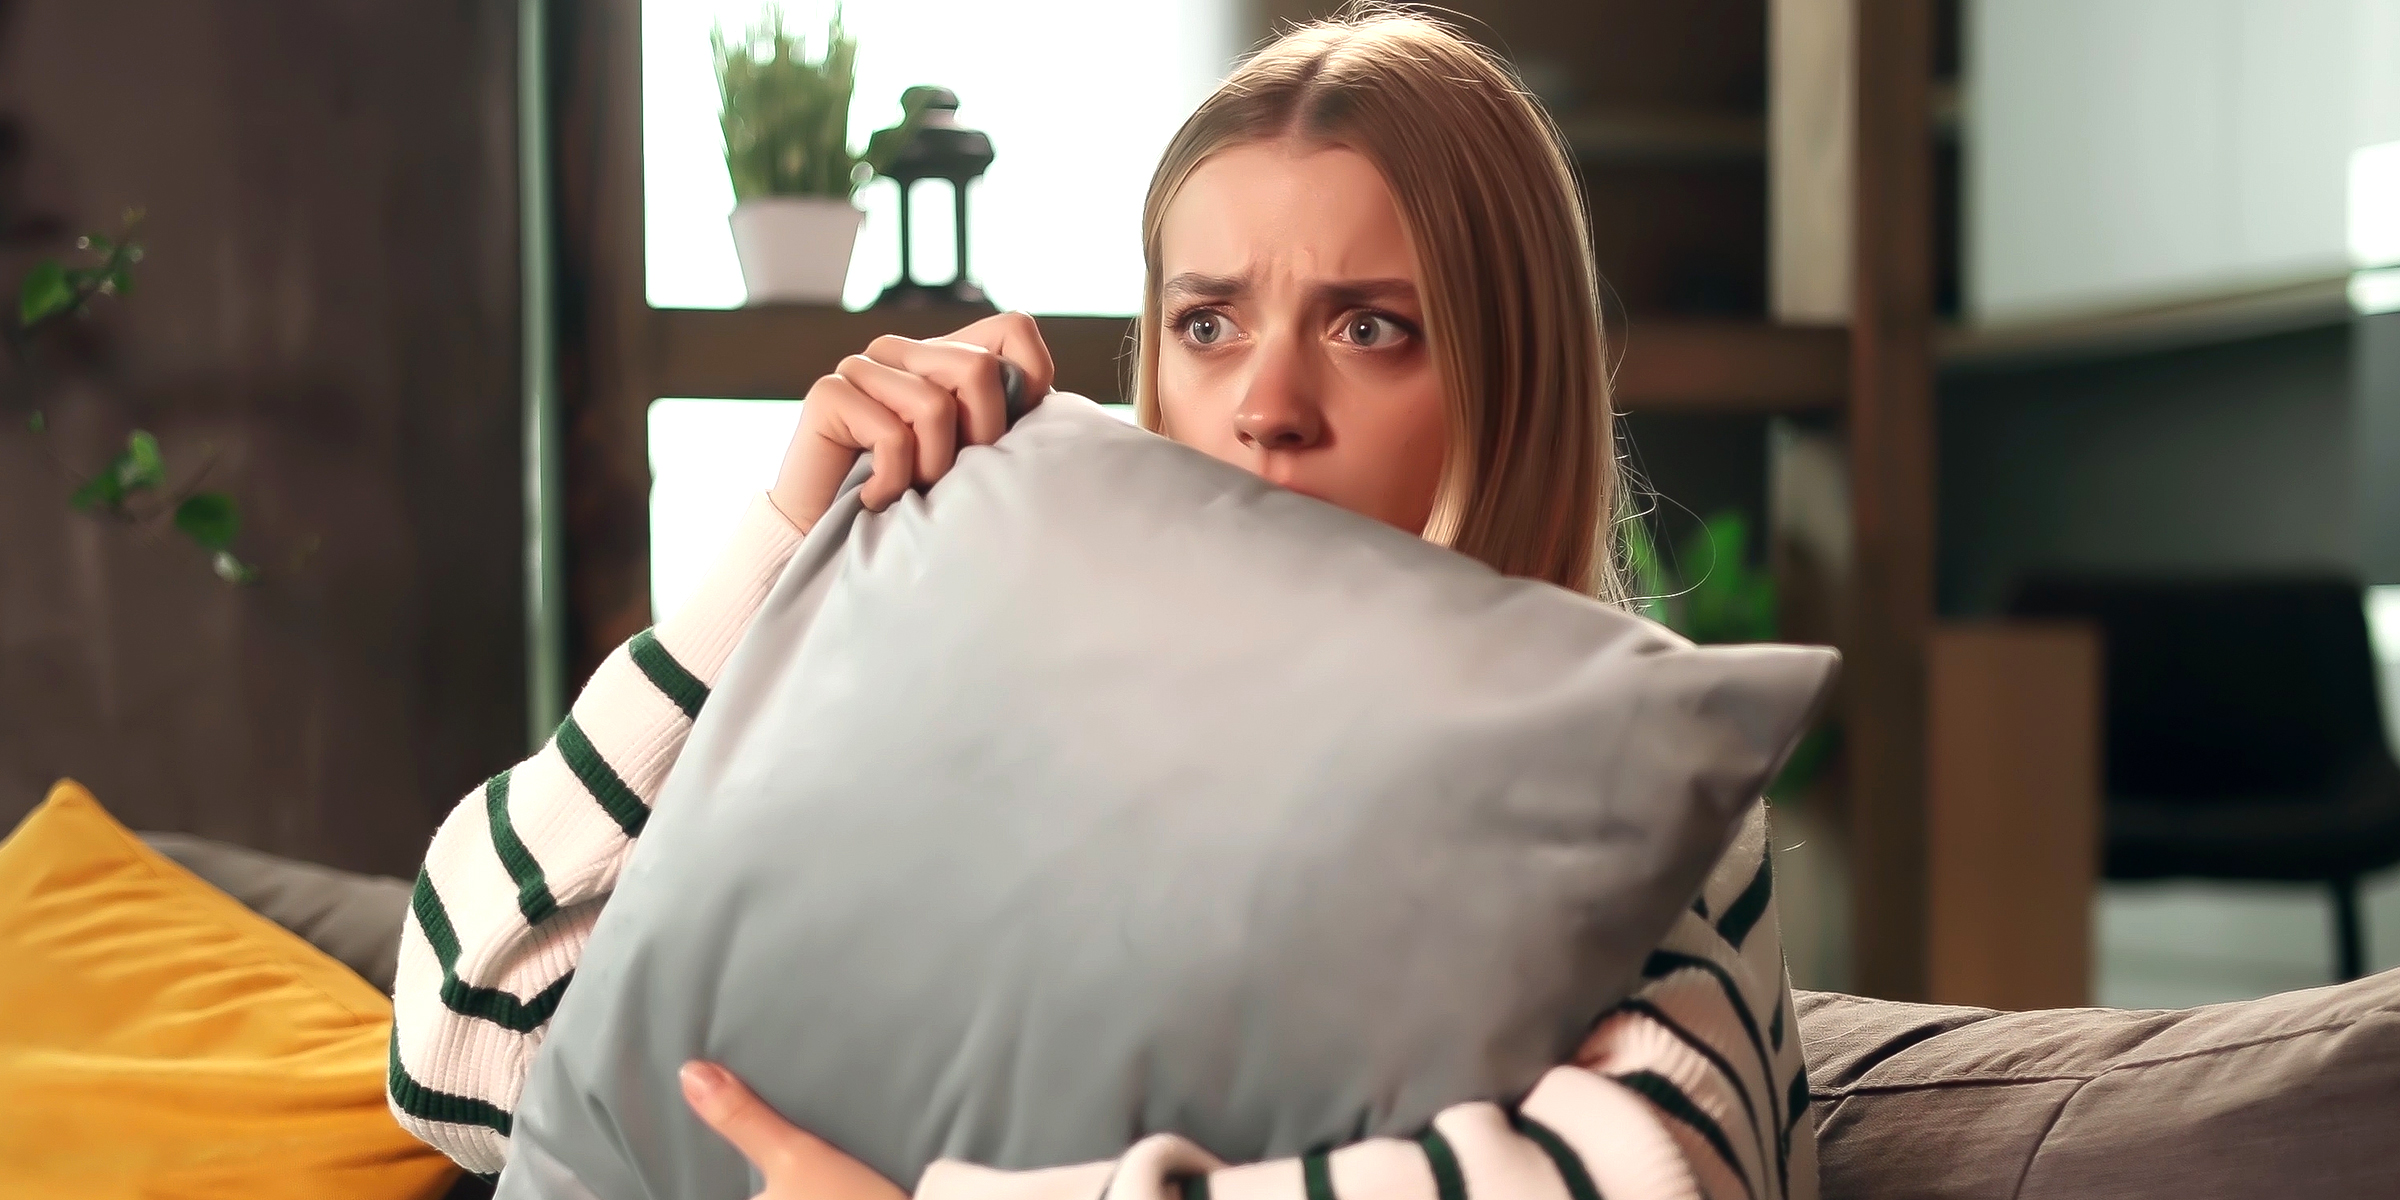 A woman holding a pillow | Source: Shutterstock